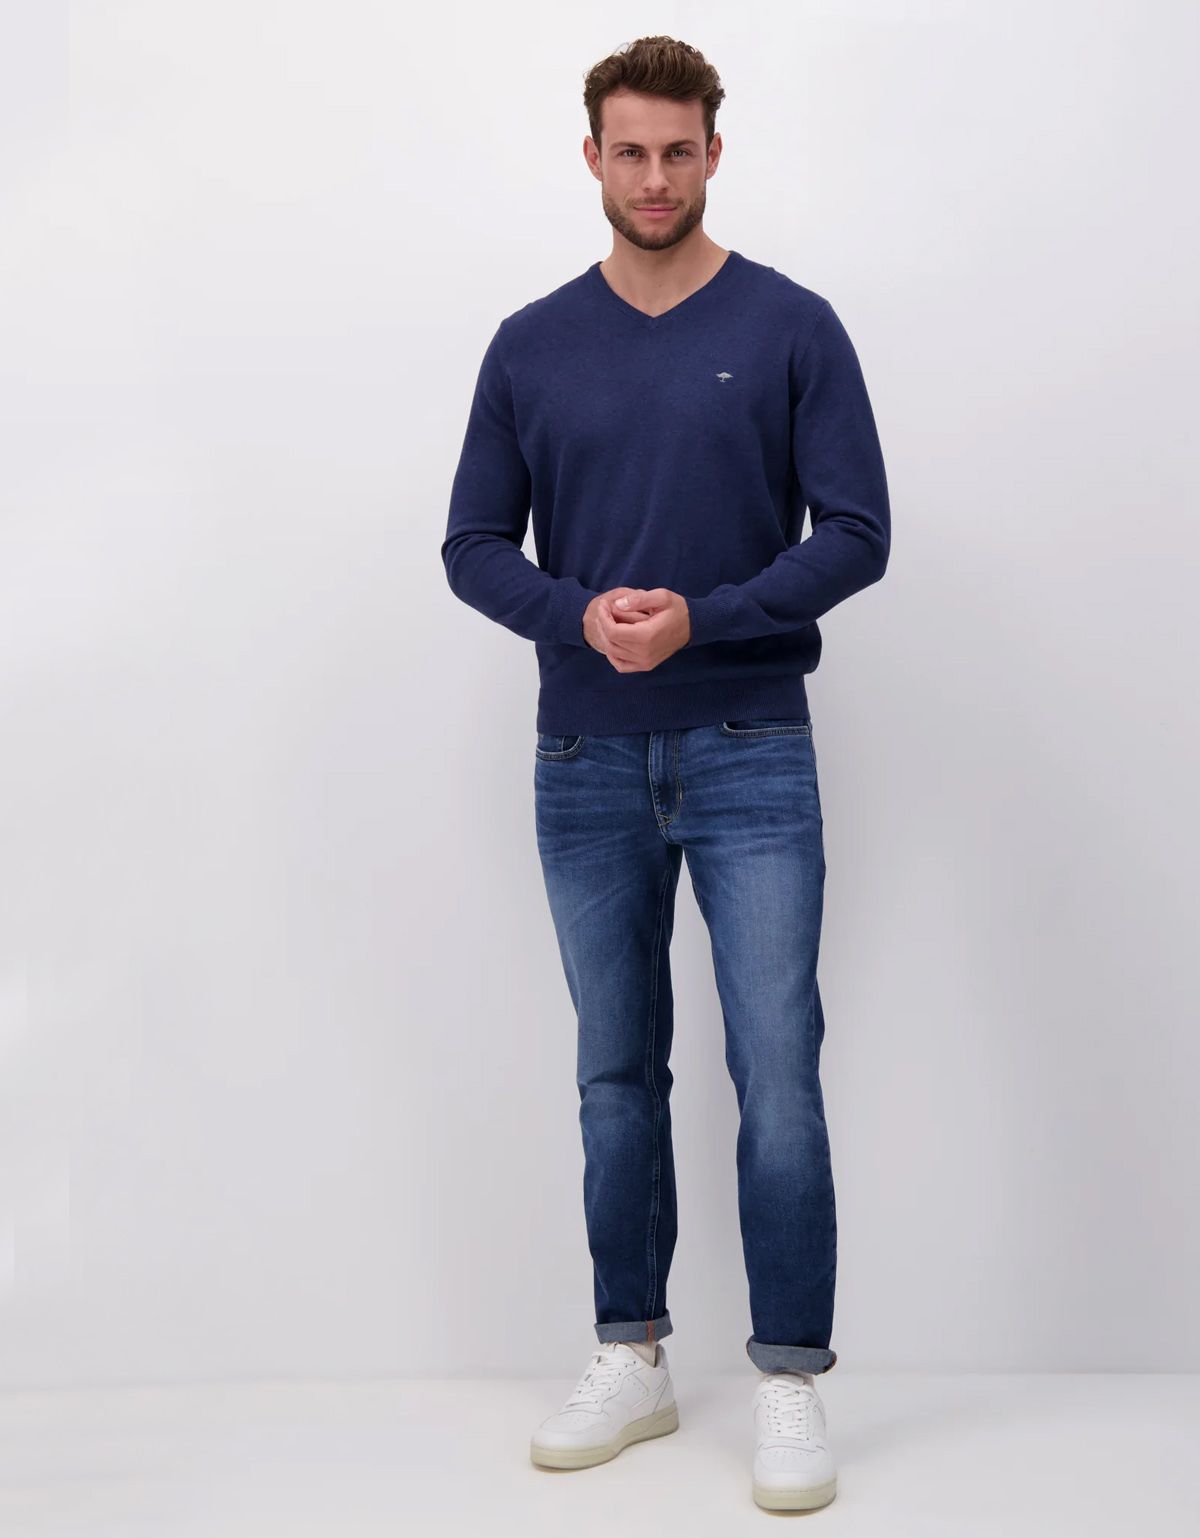 Пуловер мужской вязаный Fynch-Hatton хлопковый | купить в интернет-магазине Olymp-Men